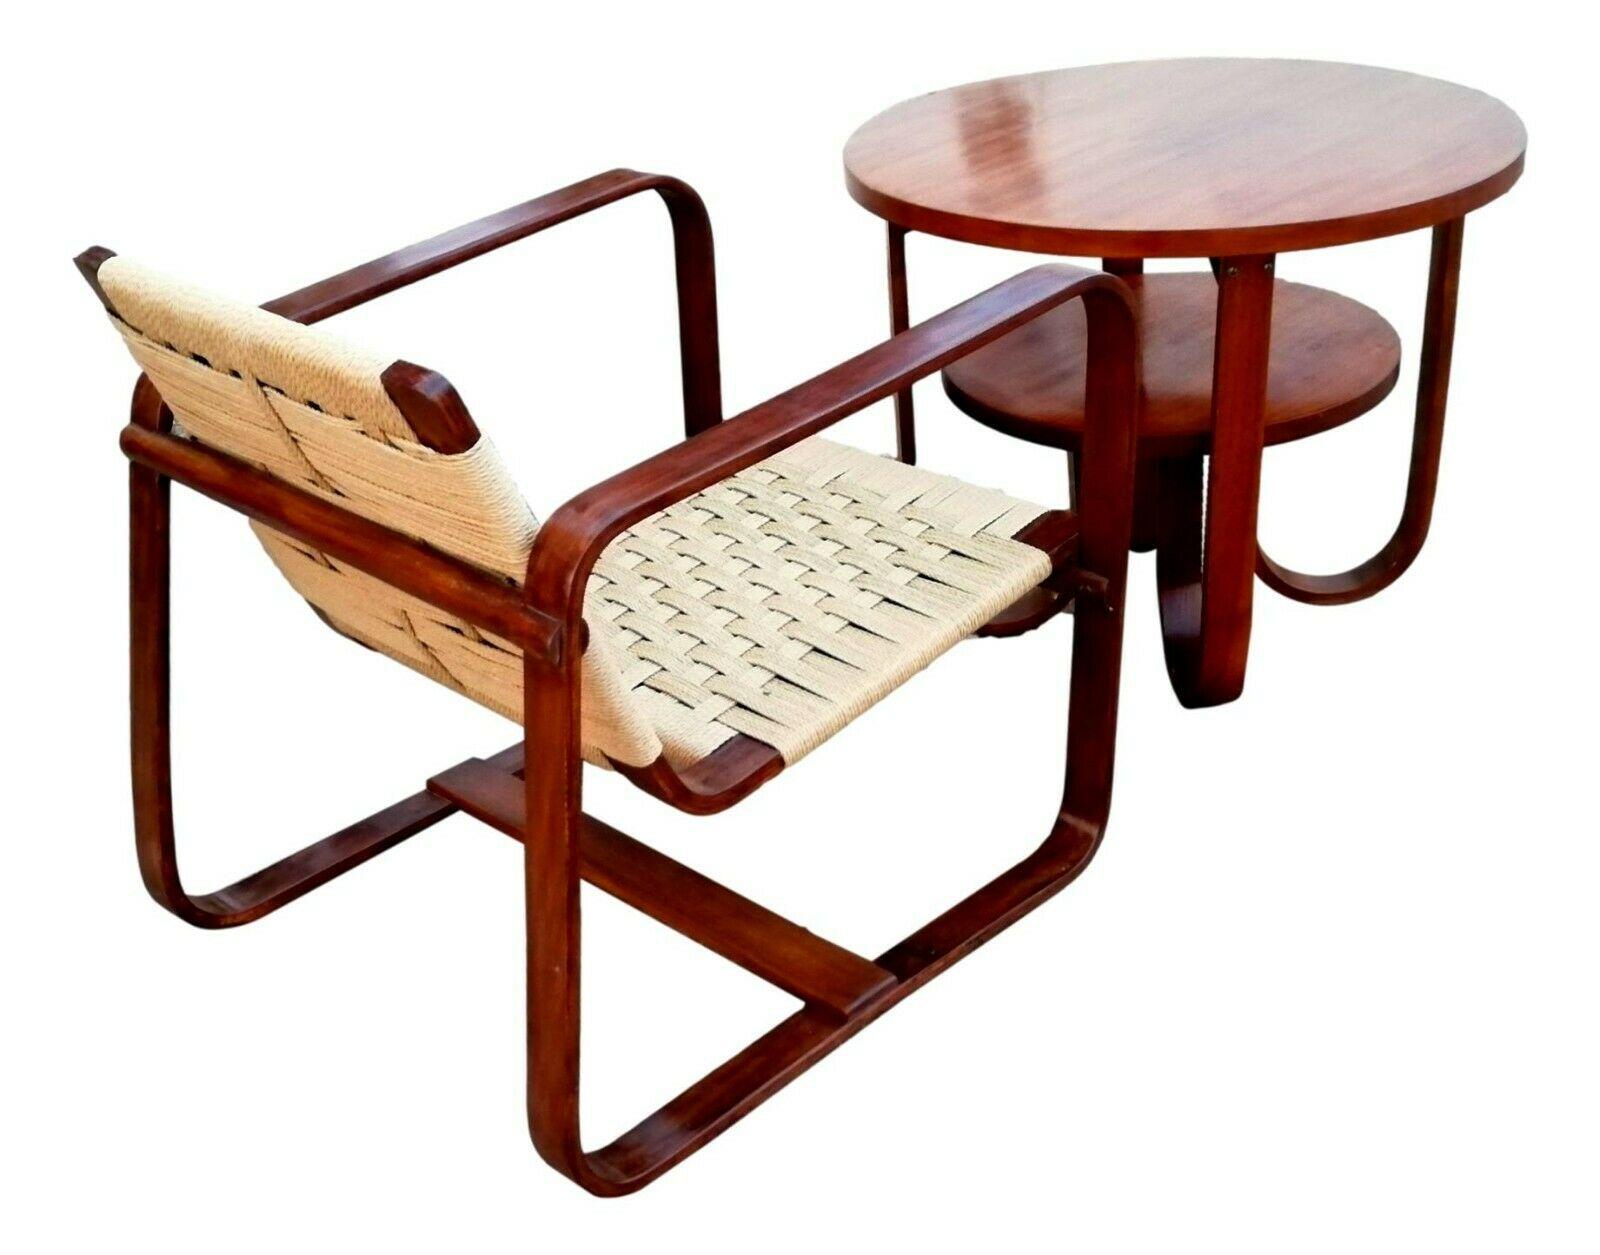 Rare ensemble composé d'un fauteuil et d'une petite table conçu au milieu des années 40 par giuseppe pagano pogatschnig pour gino maggioni, pour l'université Bocconi de Milan.

structure en contreplaqué de hêtre cintré et massif, revêtement du